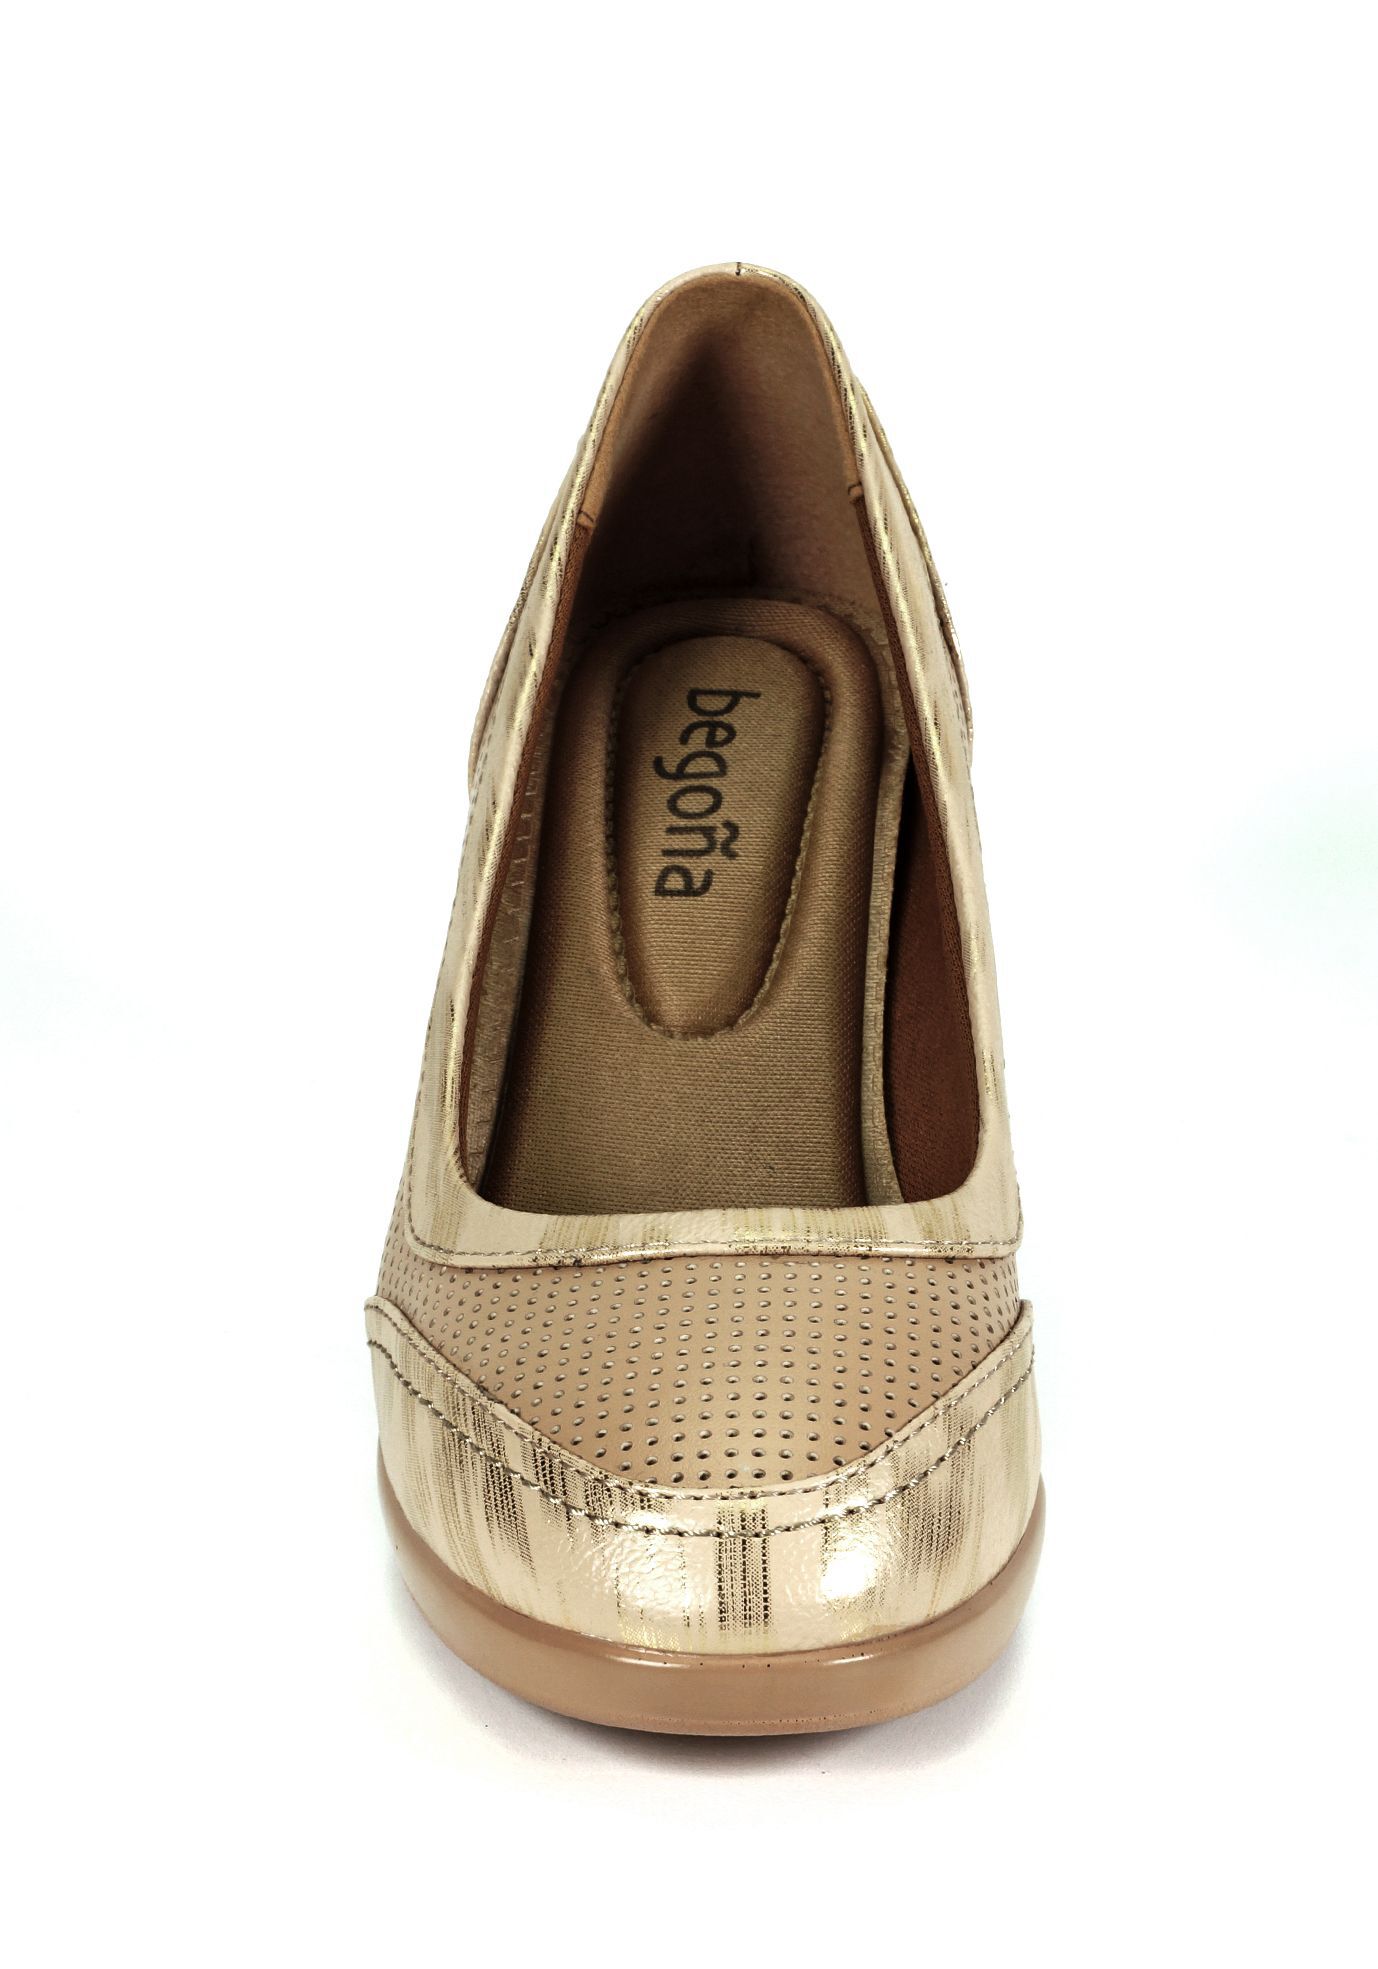 Histórico de precios: Zapato Elbia Beige - Begoña | Paris